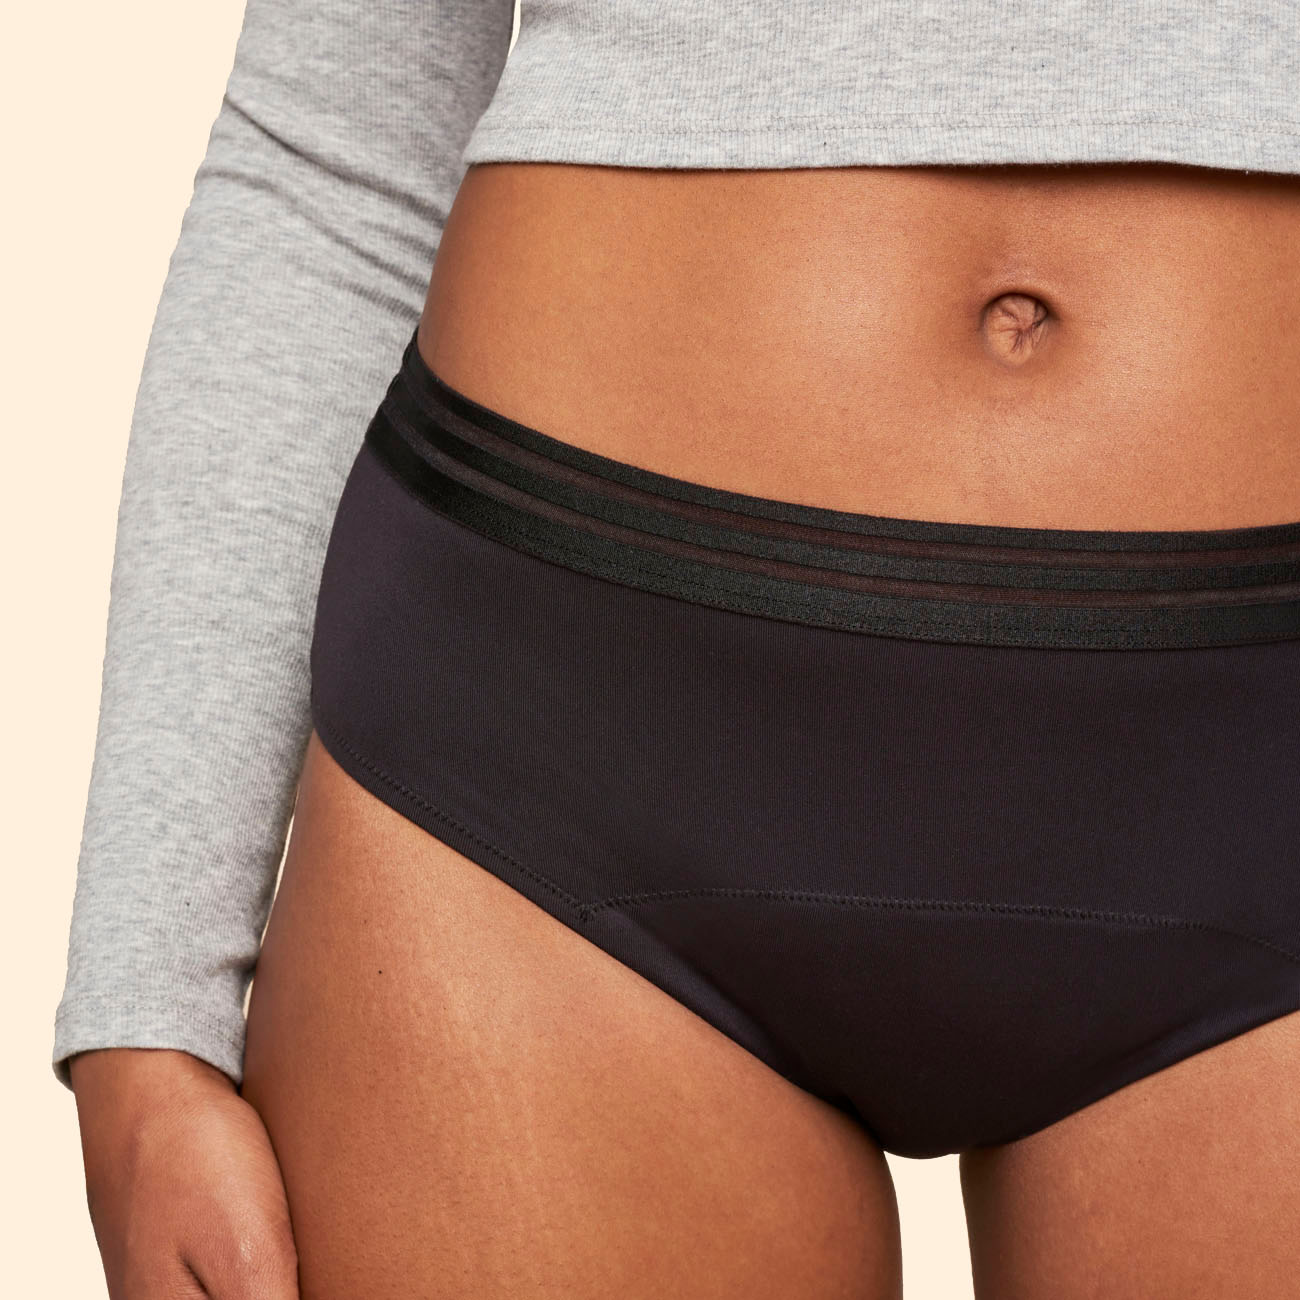 Anne Klein 5-Pair Womens Brief Underwear Panties Cotton Blend Full